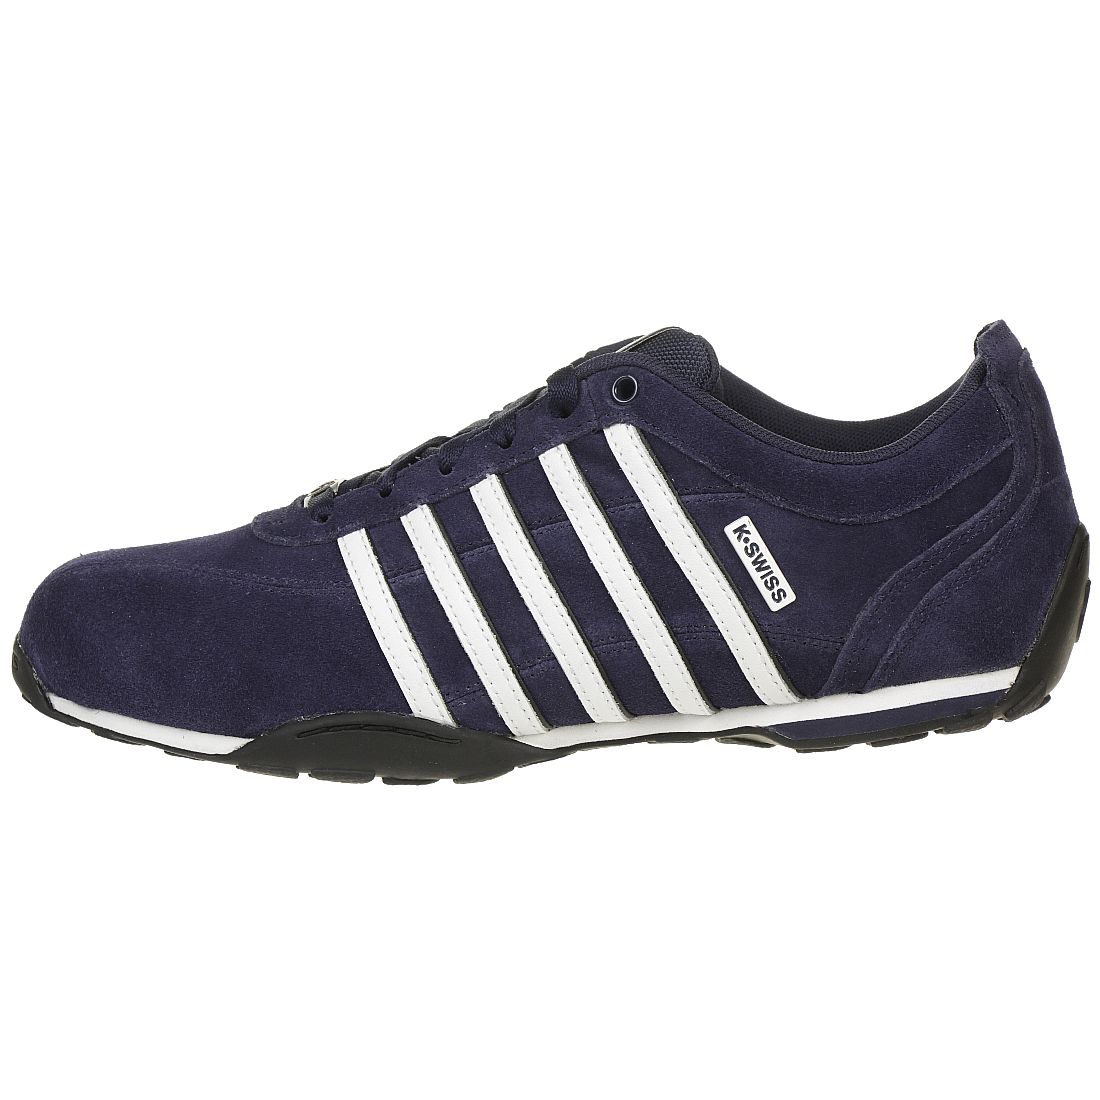 K-SWISS Arvee 1.5 Schuhe Sneaker blau 02453-442-M